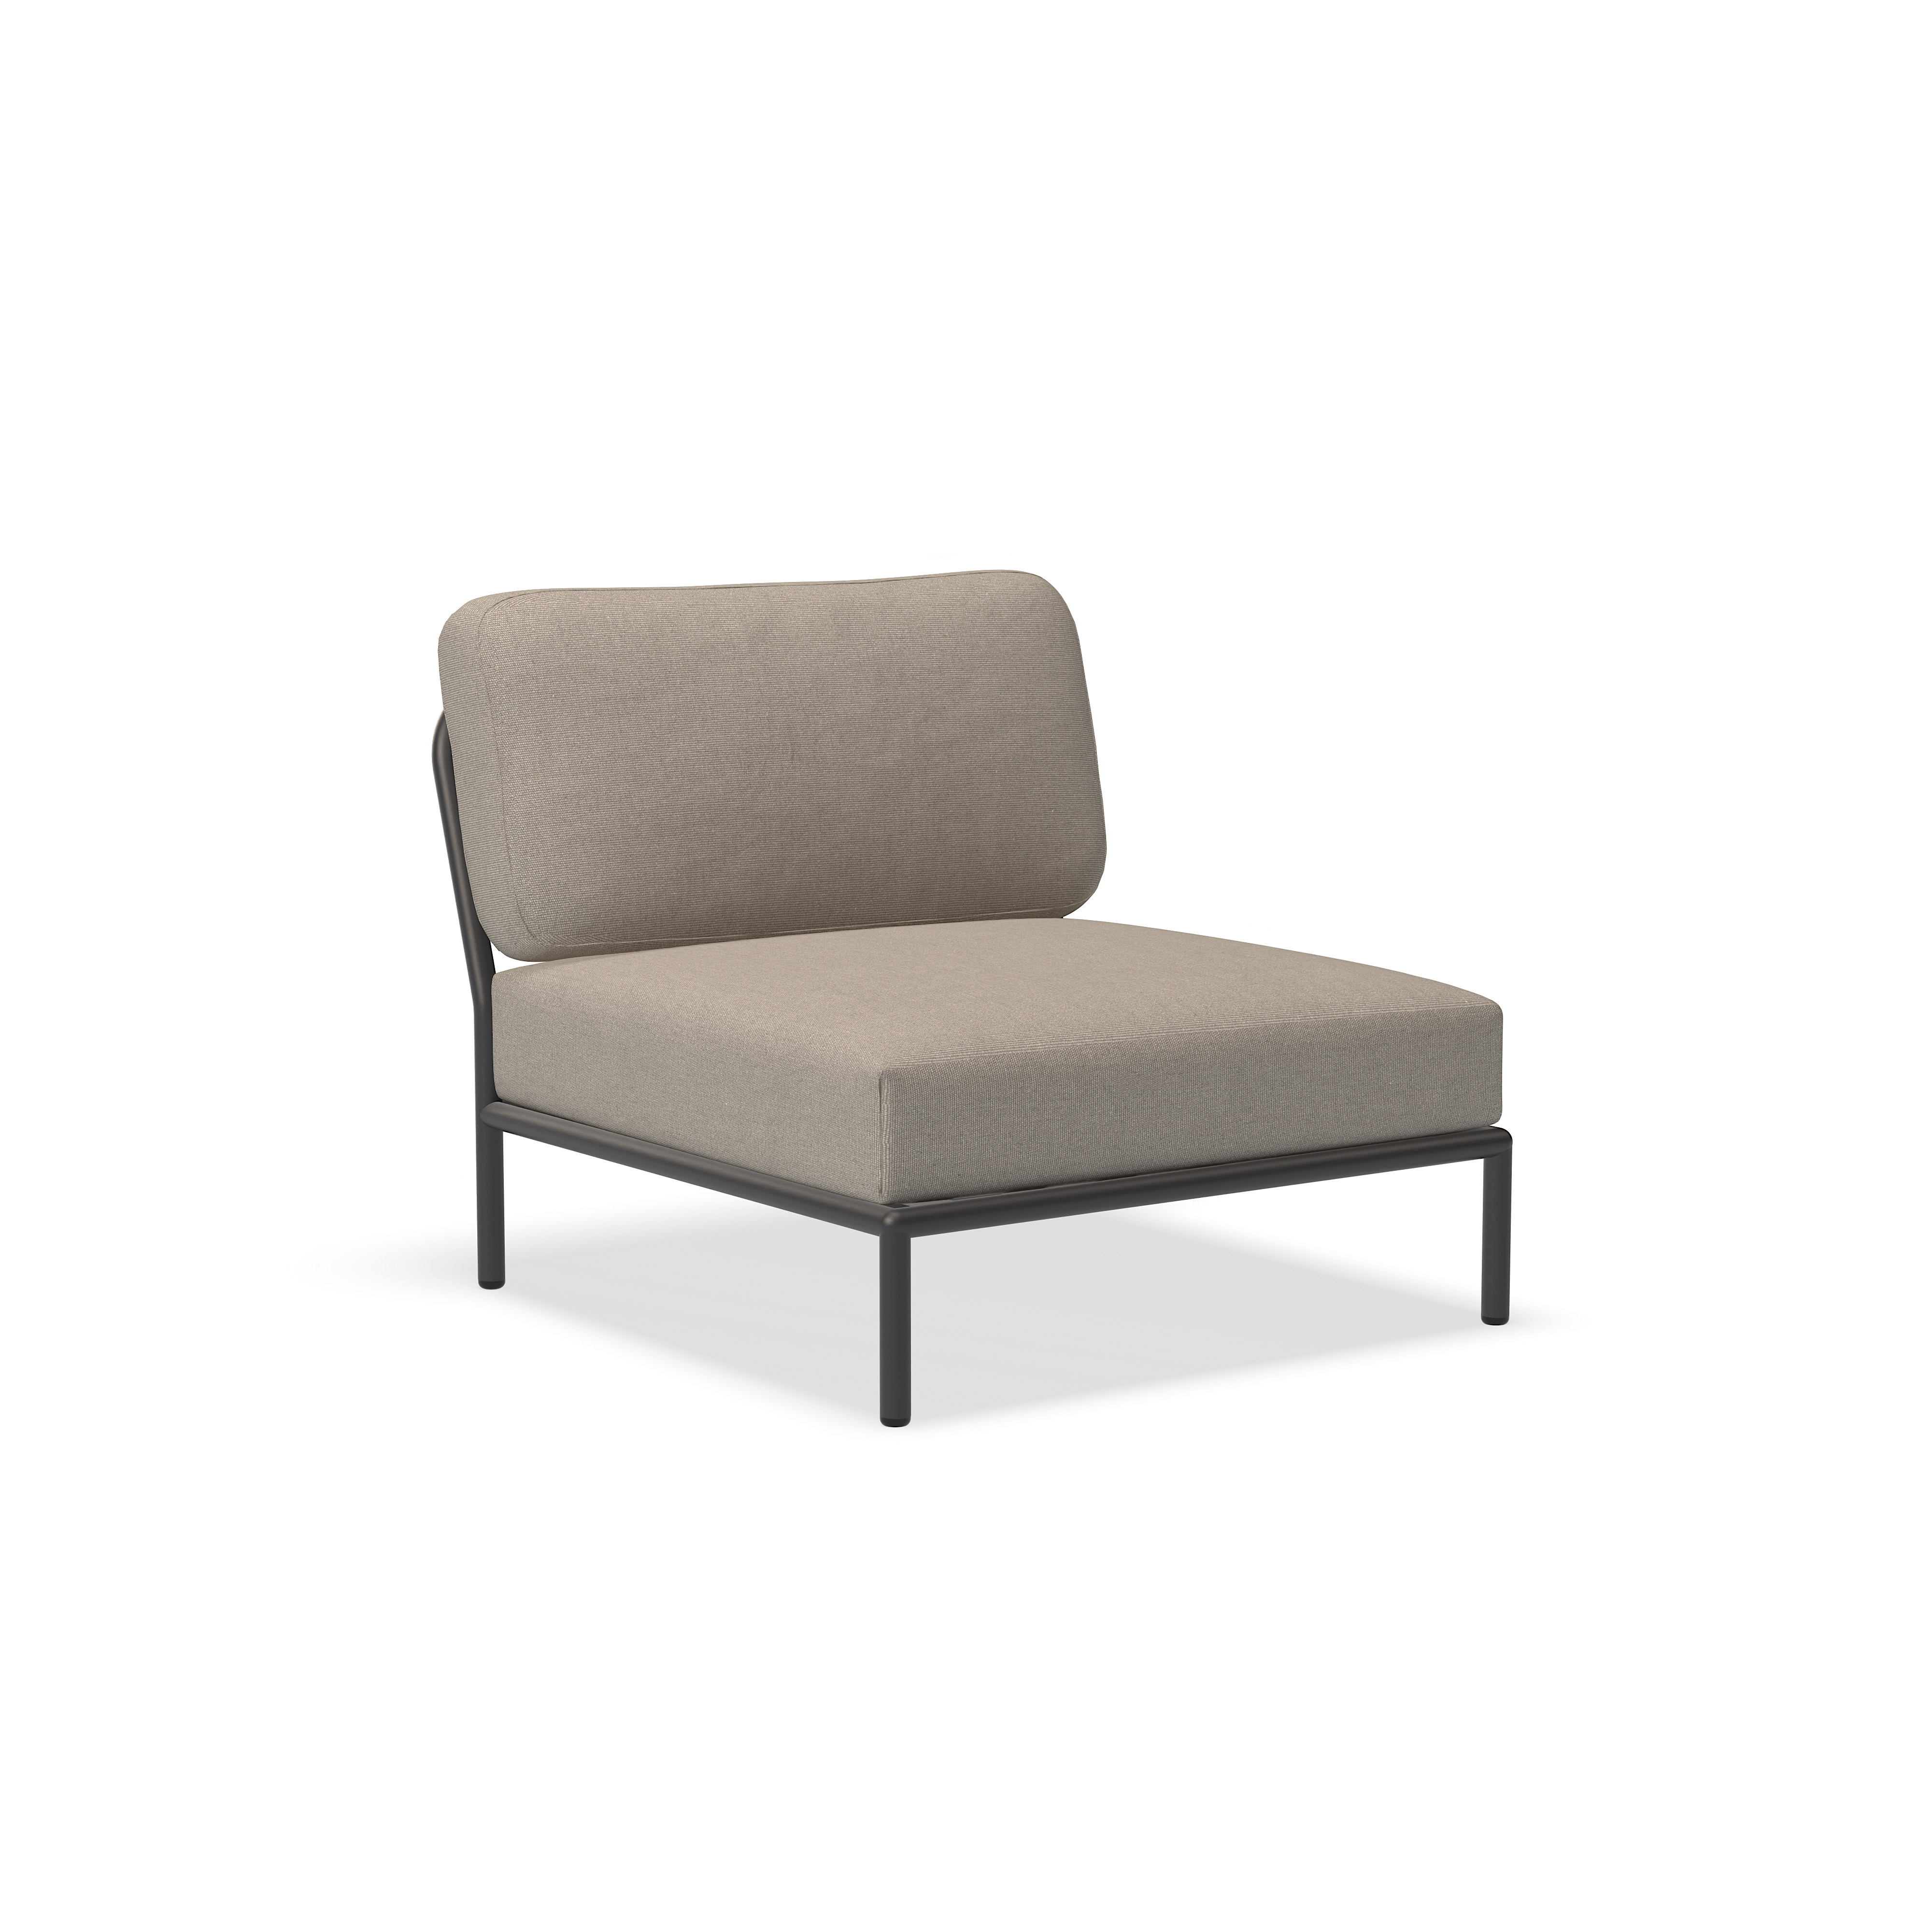 כיסא - 12205-9251 - כיסא, אפר (HERITAGE), מבנה אפור כהה